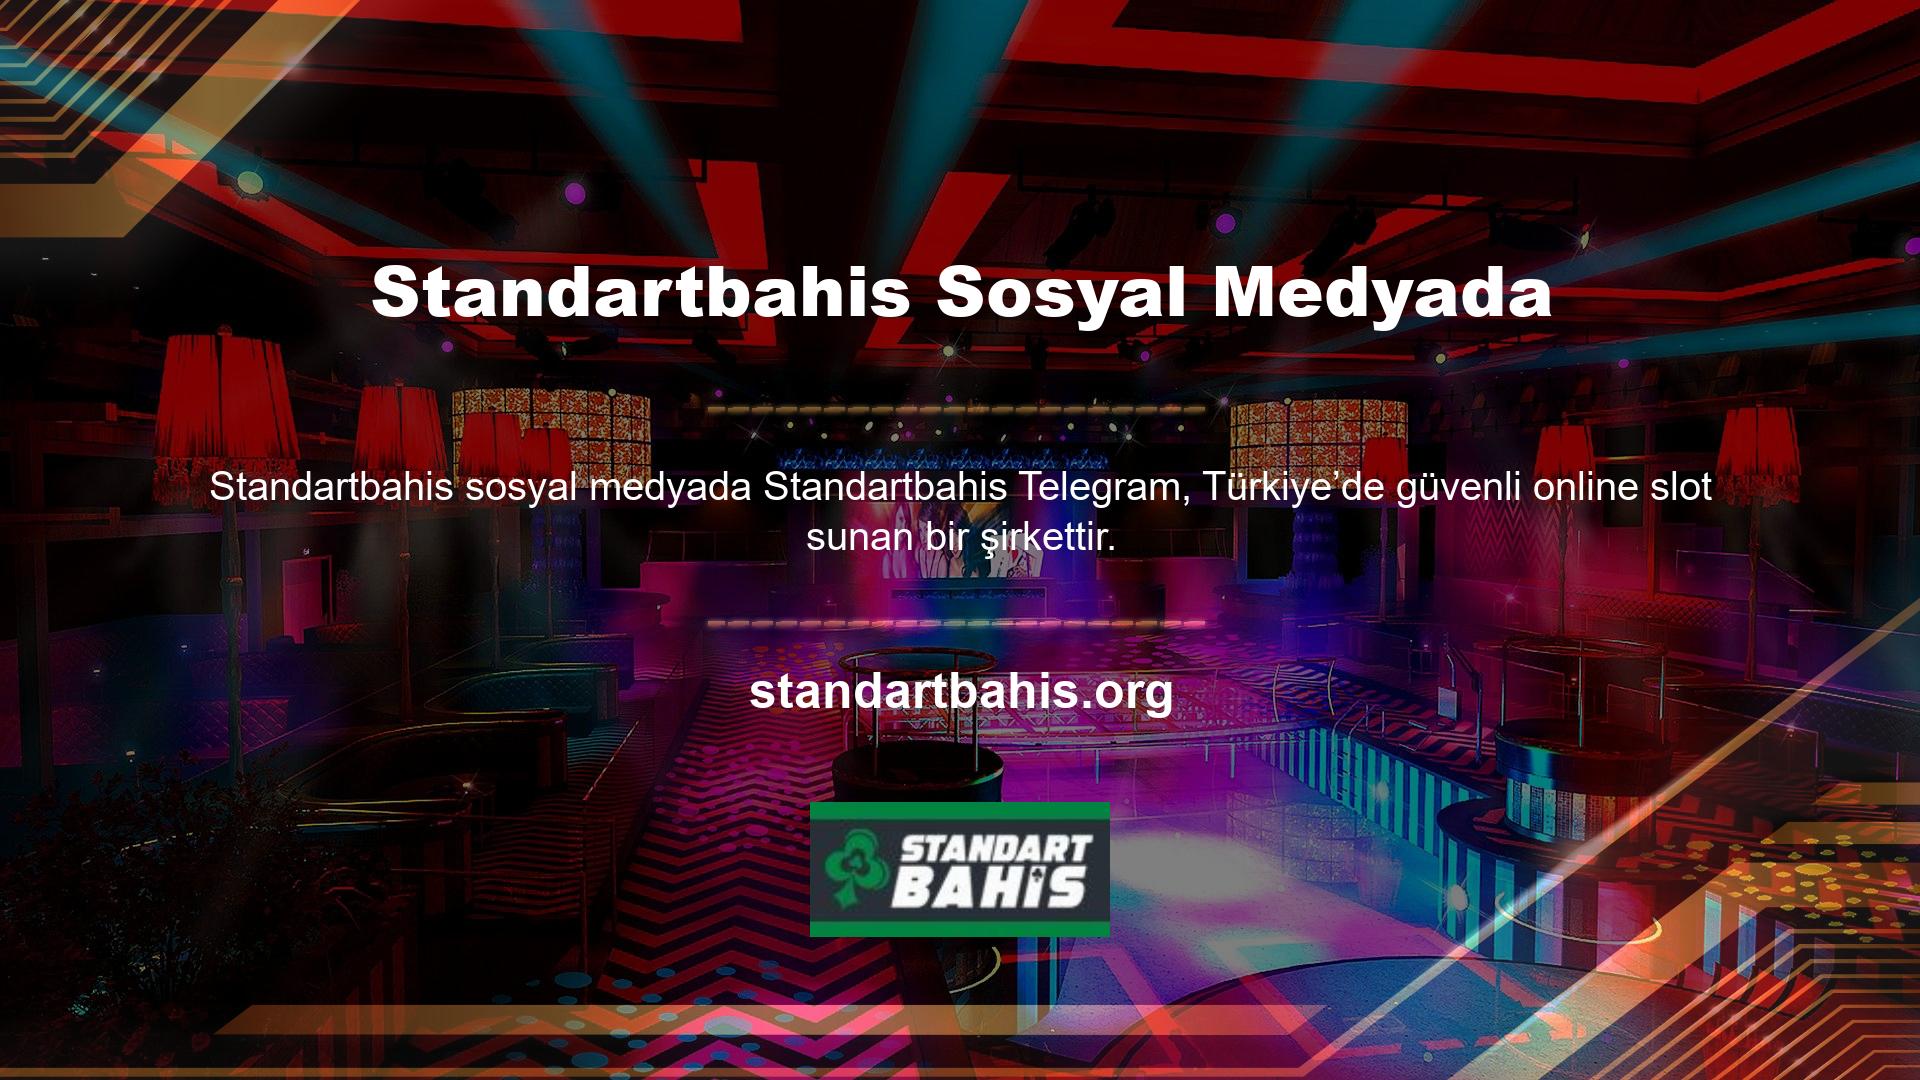 Standartbahis, Türkiye’de her türlü slot oyununu seven kişiler için popüler ve güncel bir kuruluştur